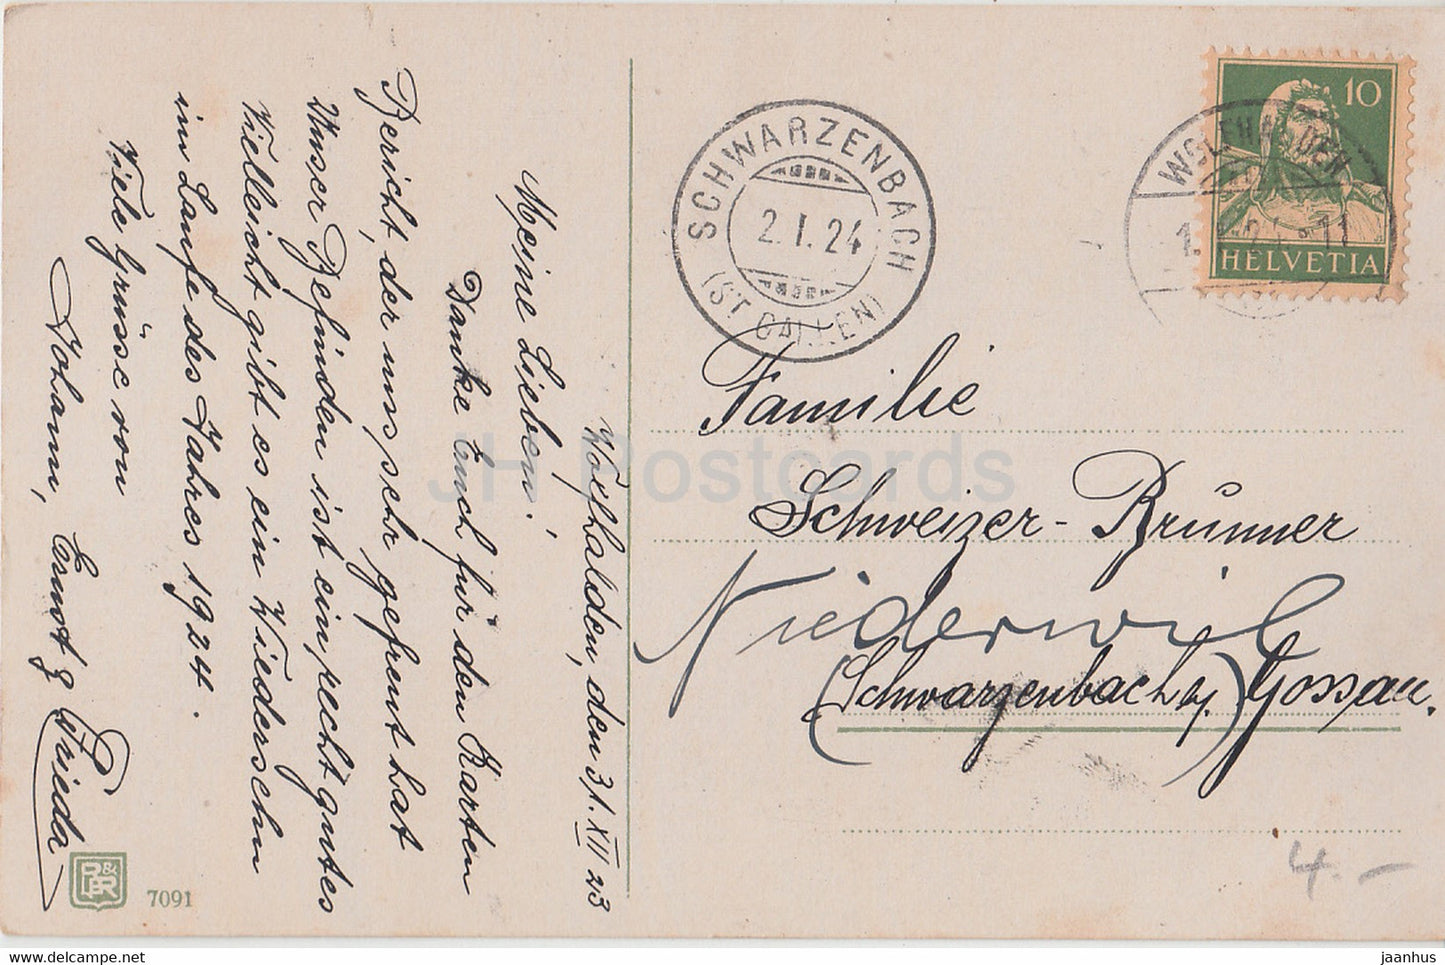 Carte de vœux du Nouvel An - Die Besten Wunsche zum neuen Jahre - cloches - BR 7091 - carte postale ancienne - 1924 - Allemagne - utilisé